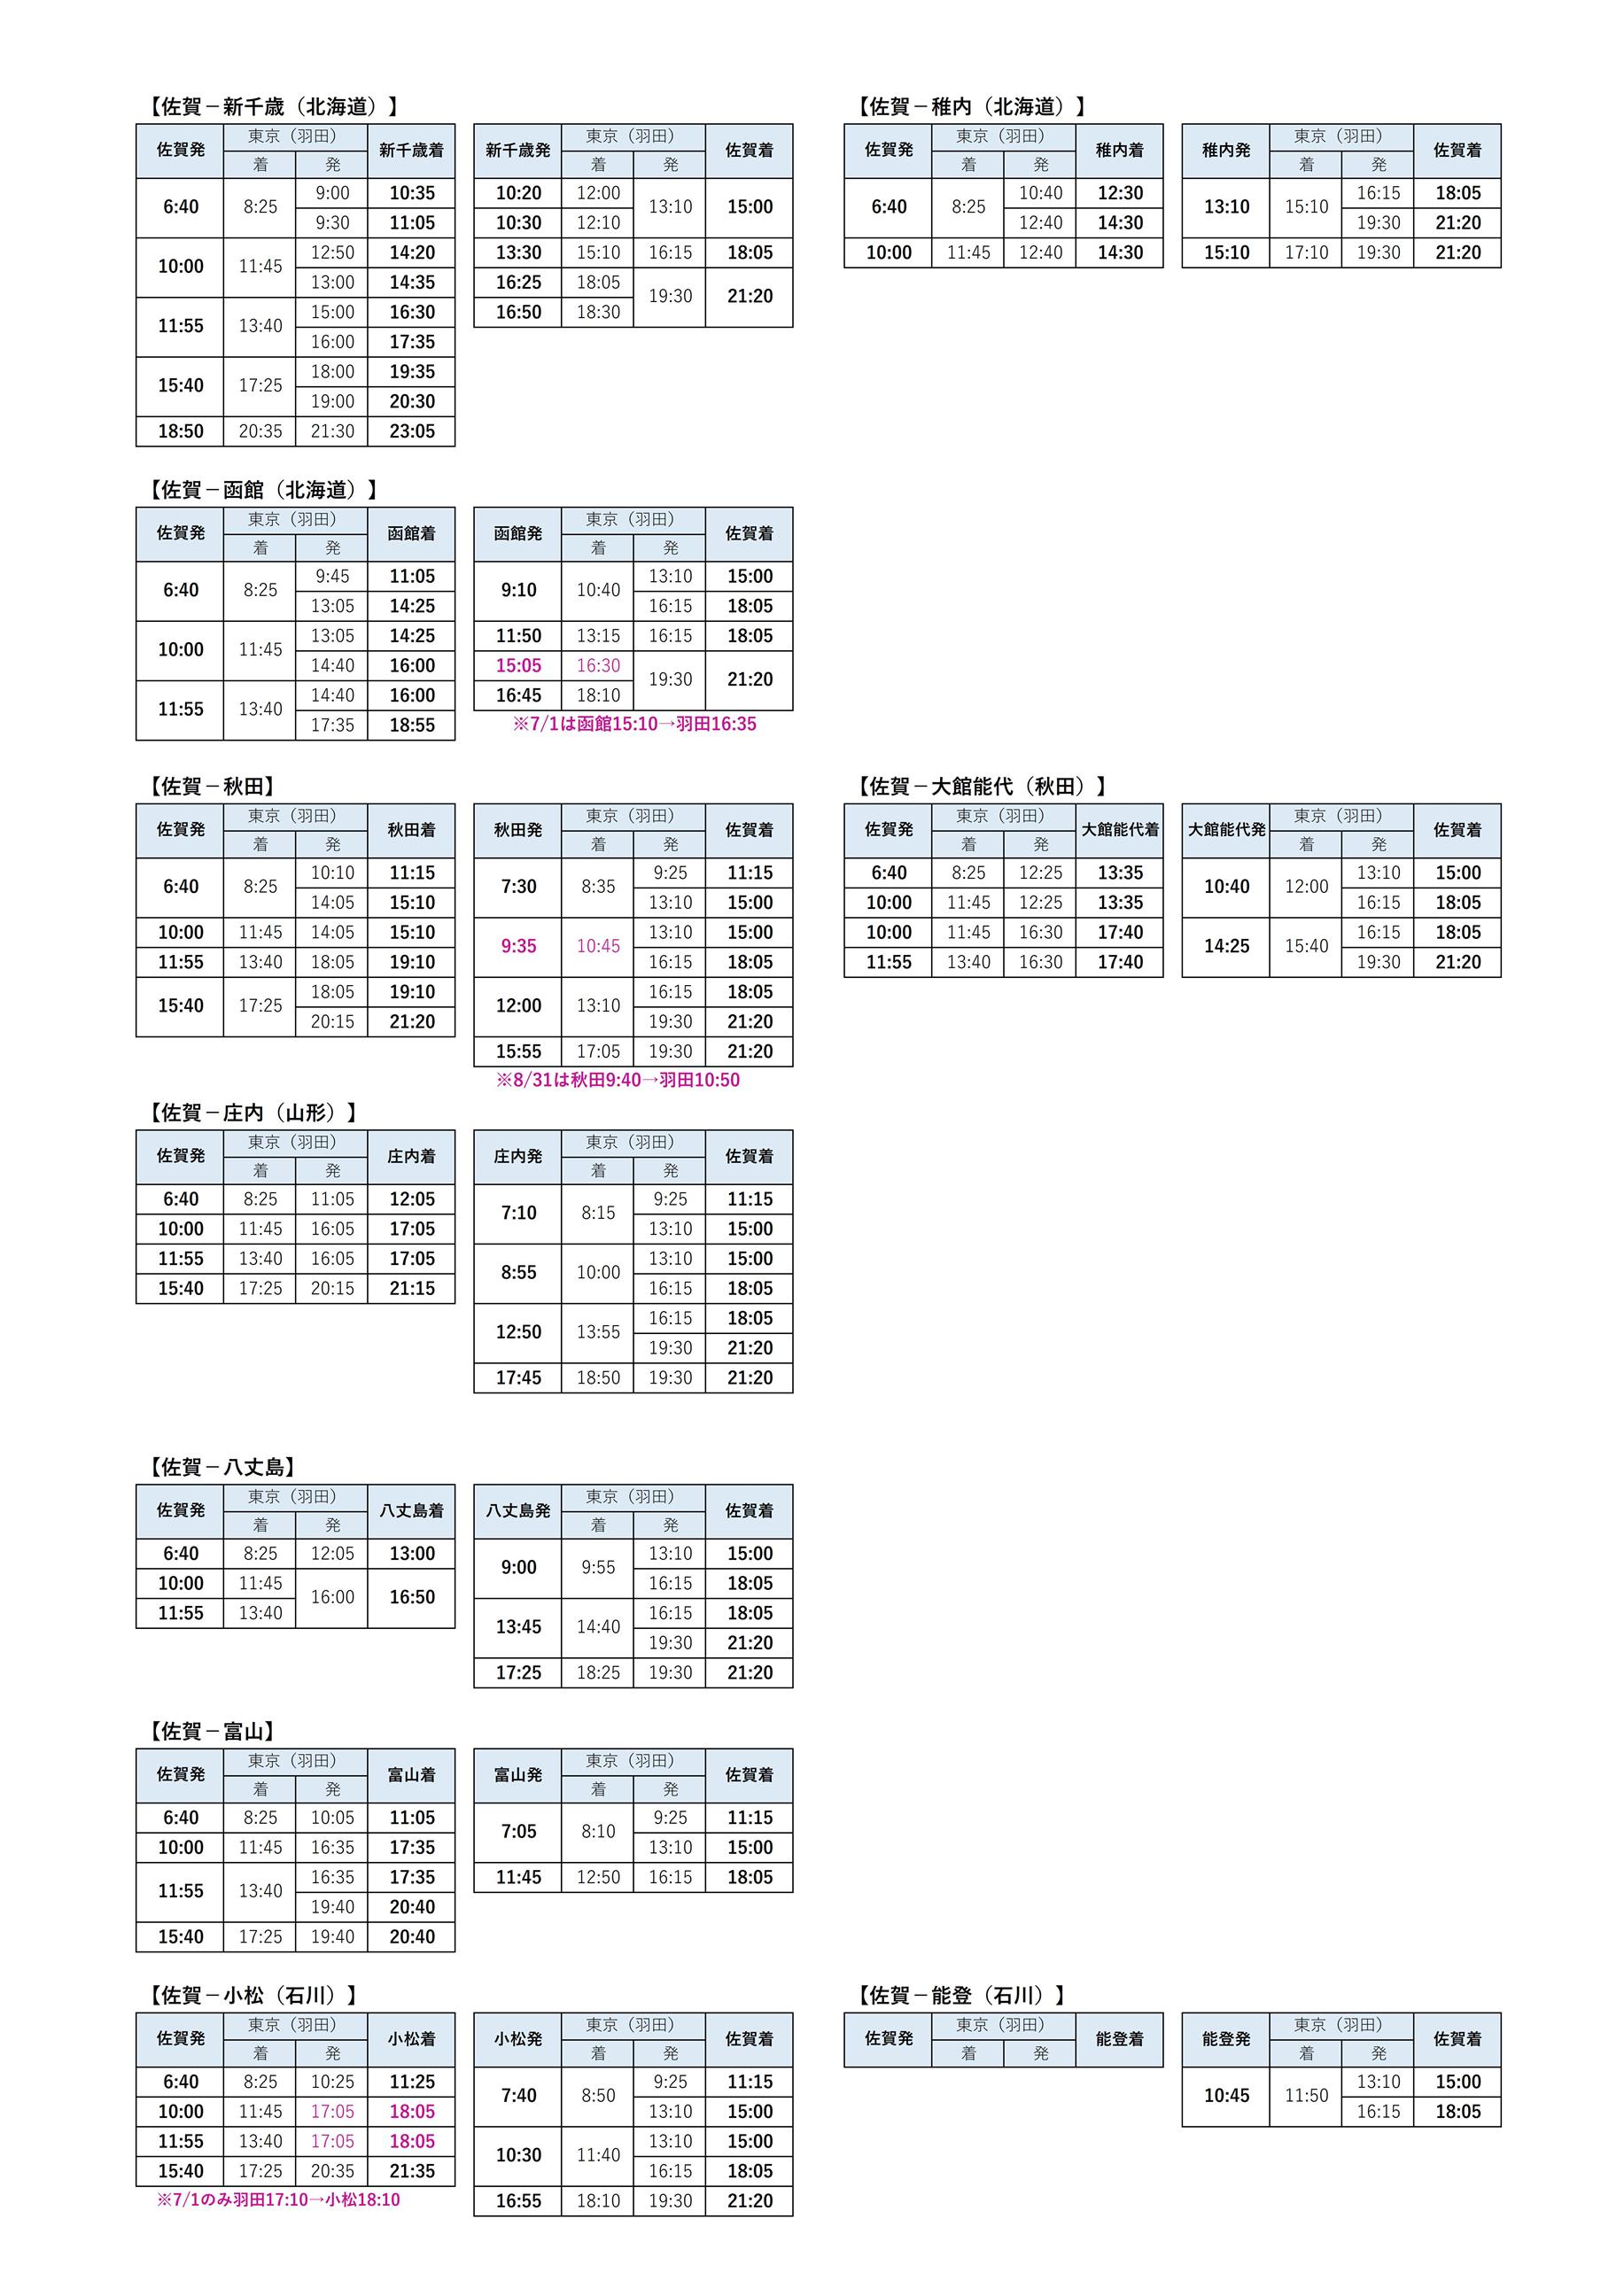 乗継時刻表(7.31～8.31)